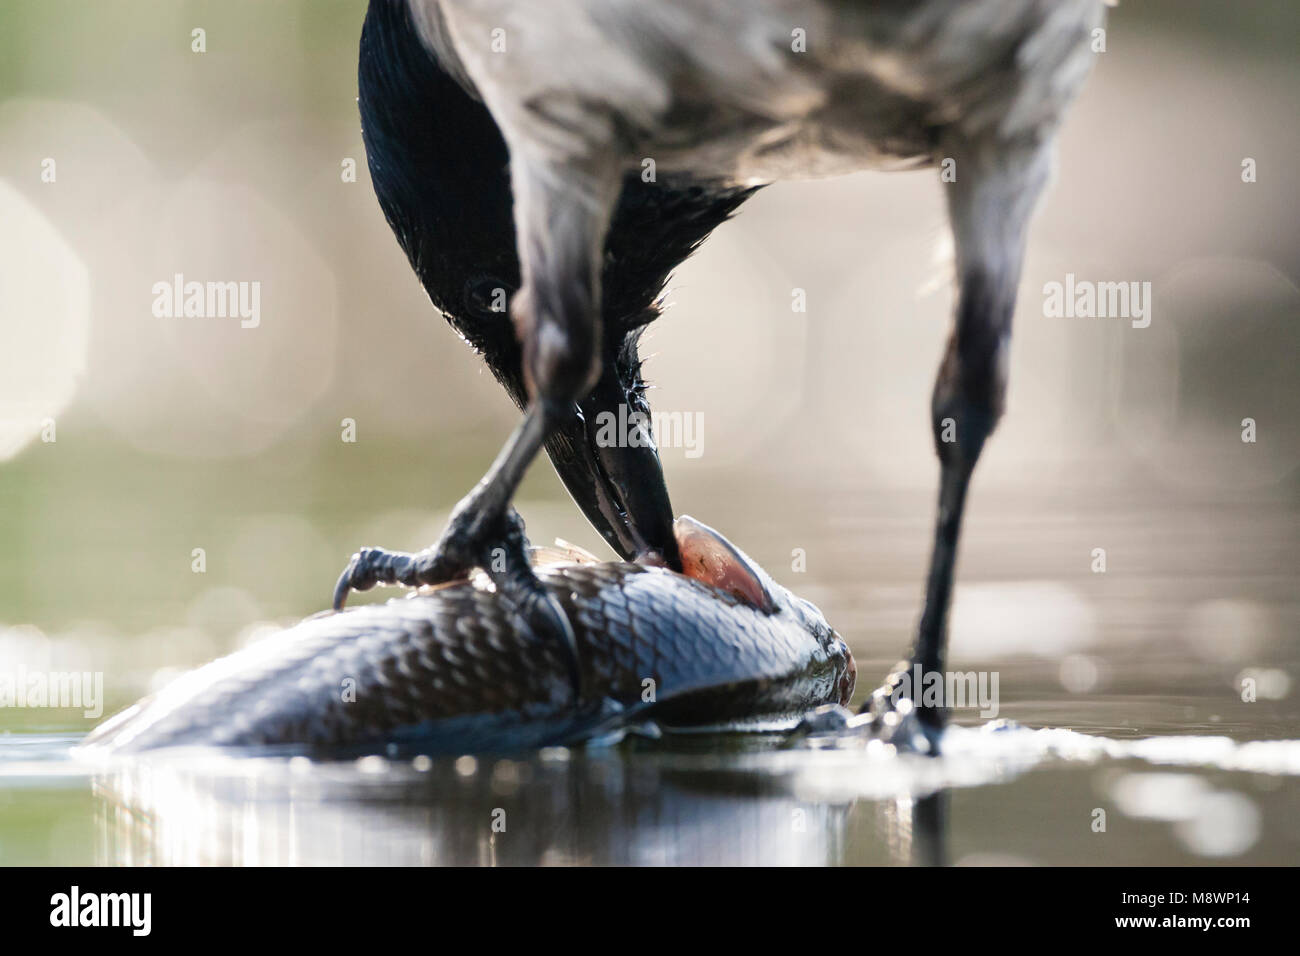 Bonte Kraai vis en tegenlicht EEG; encapuchado Crow comer pescado con luz de fondo Foto de stock